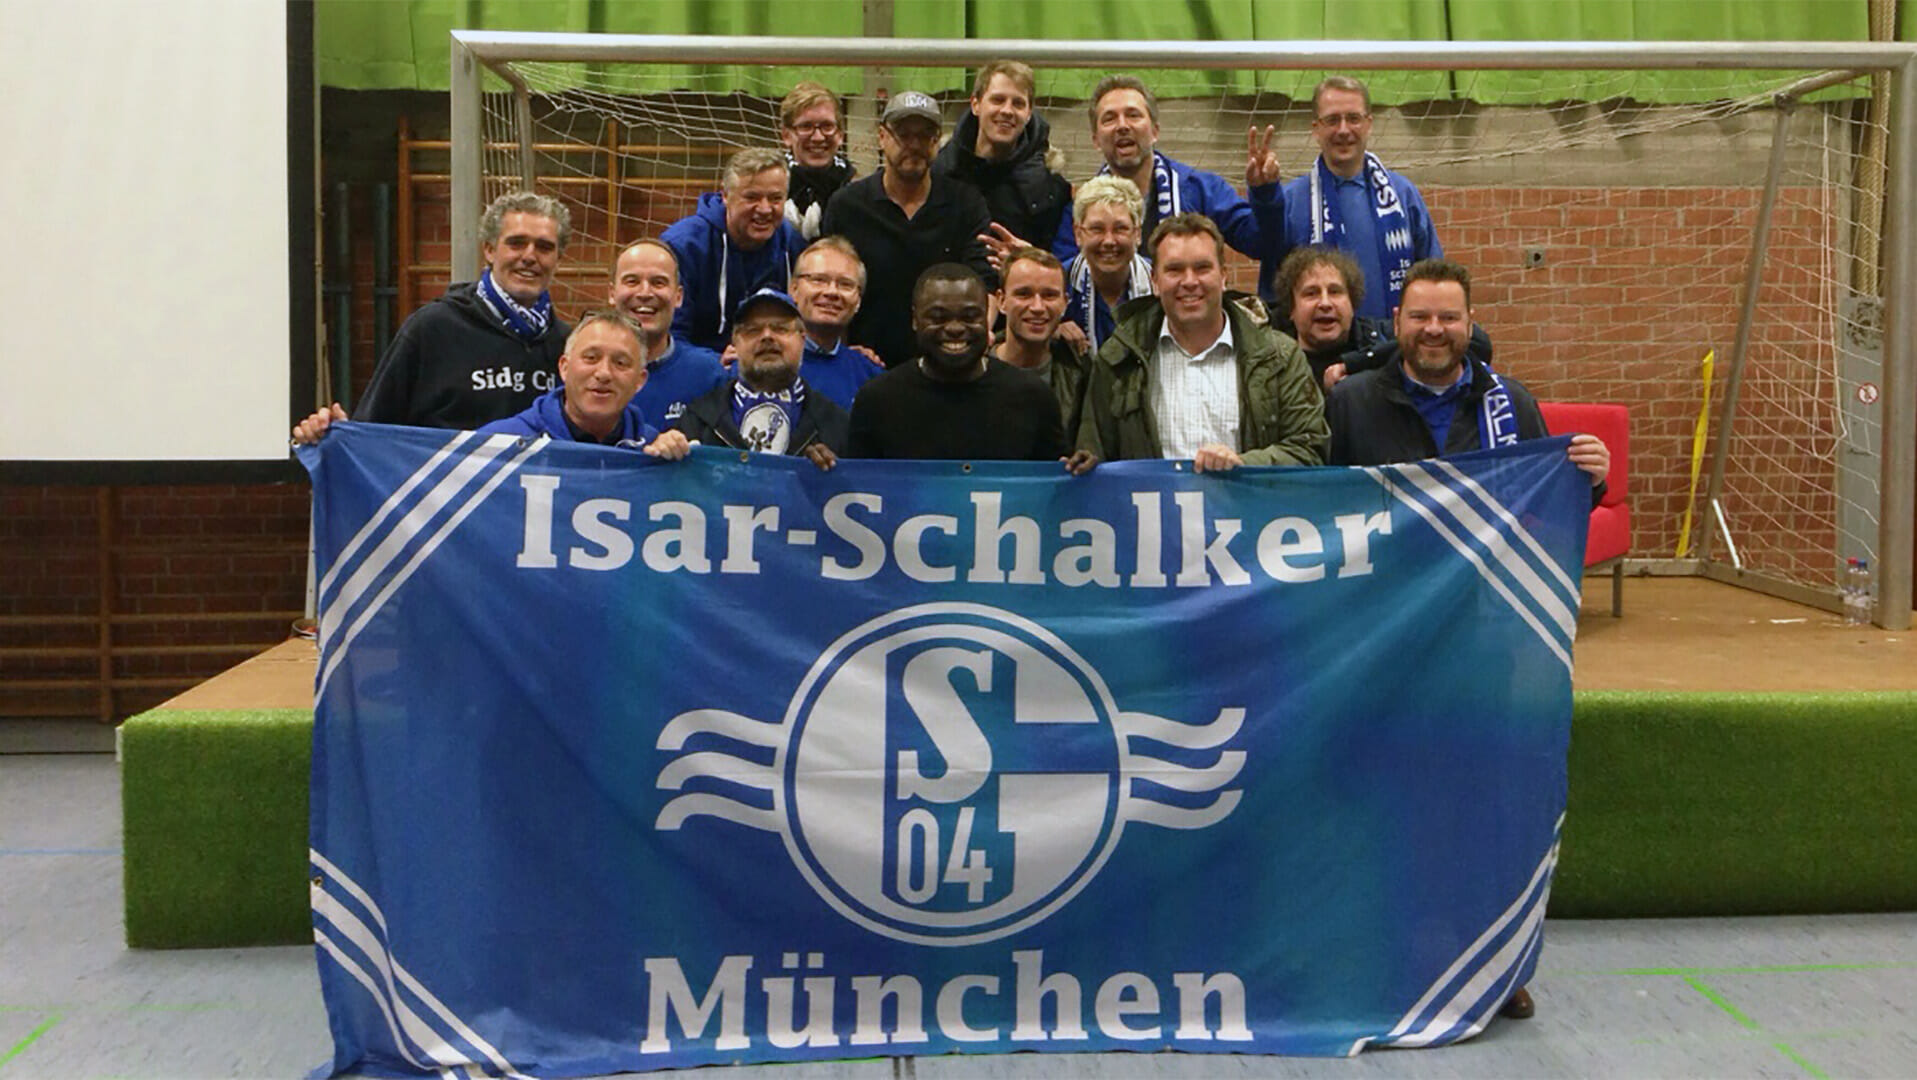 190208_München_Isar-Schalker